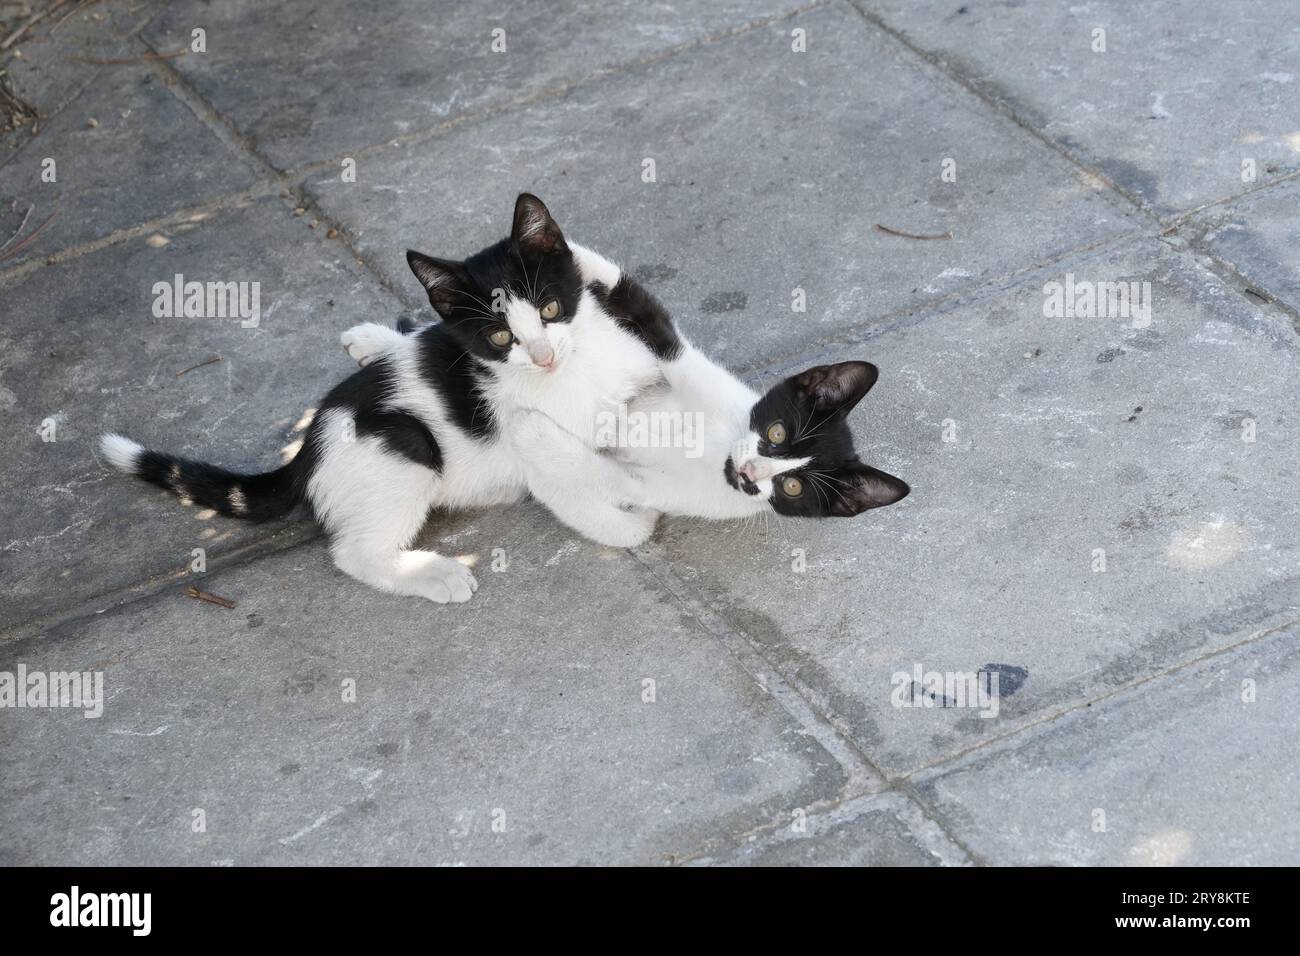 Deux chatons noirs et blancs jouent sur le trottoir. Banque D'Images